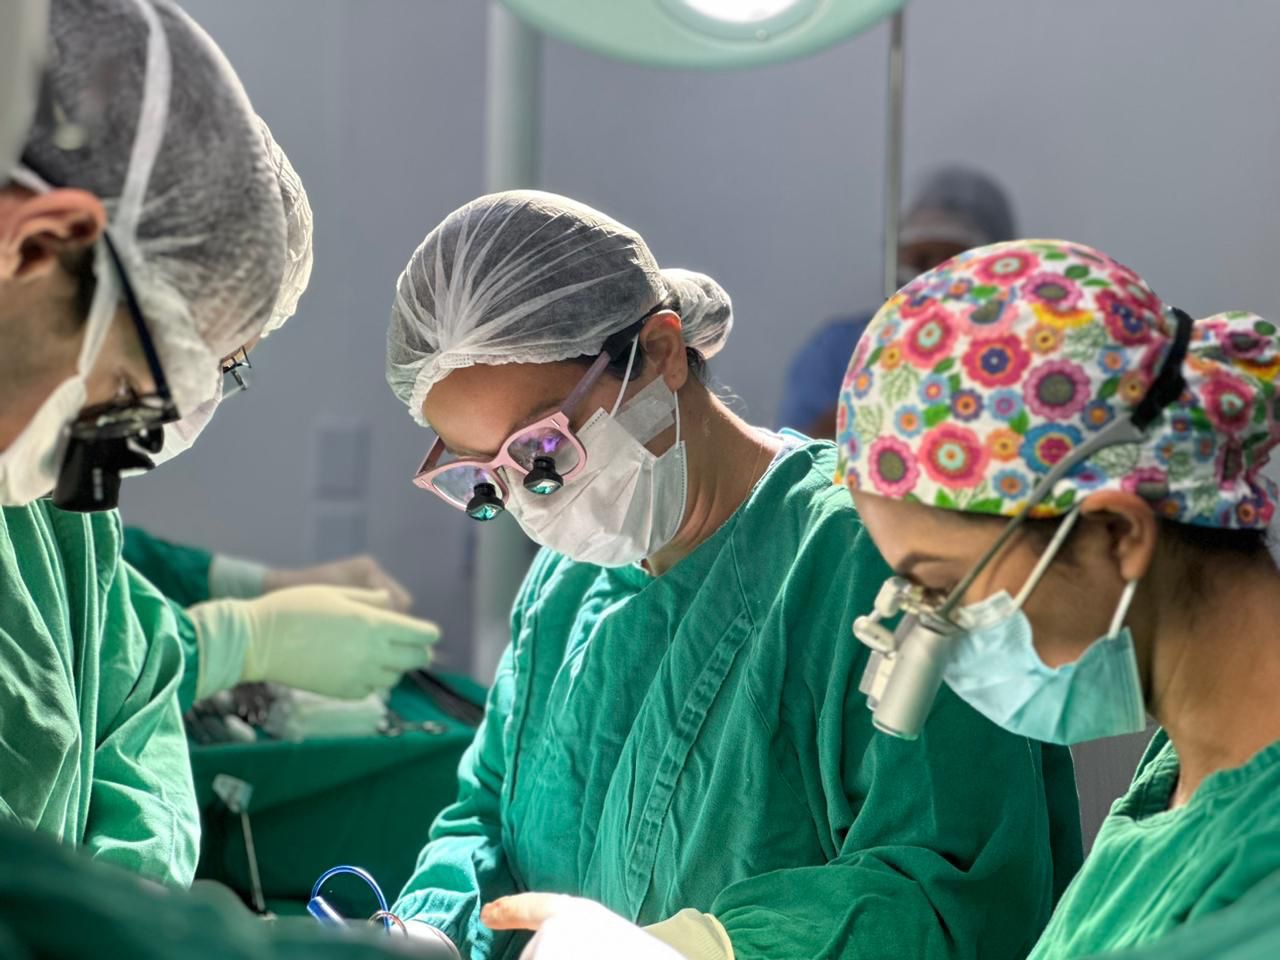 IMED - Instituto de Medicina, Estudos e Desenvolvimento | HEF - Hospital Estadual de Formosa | Captação de órgãos